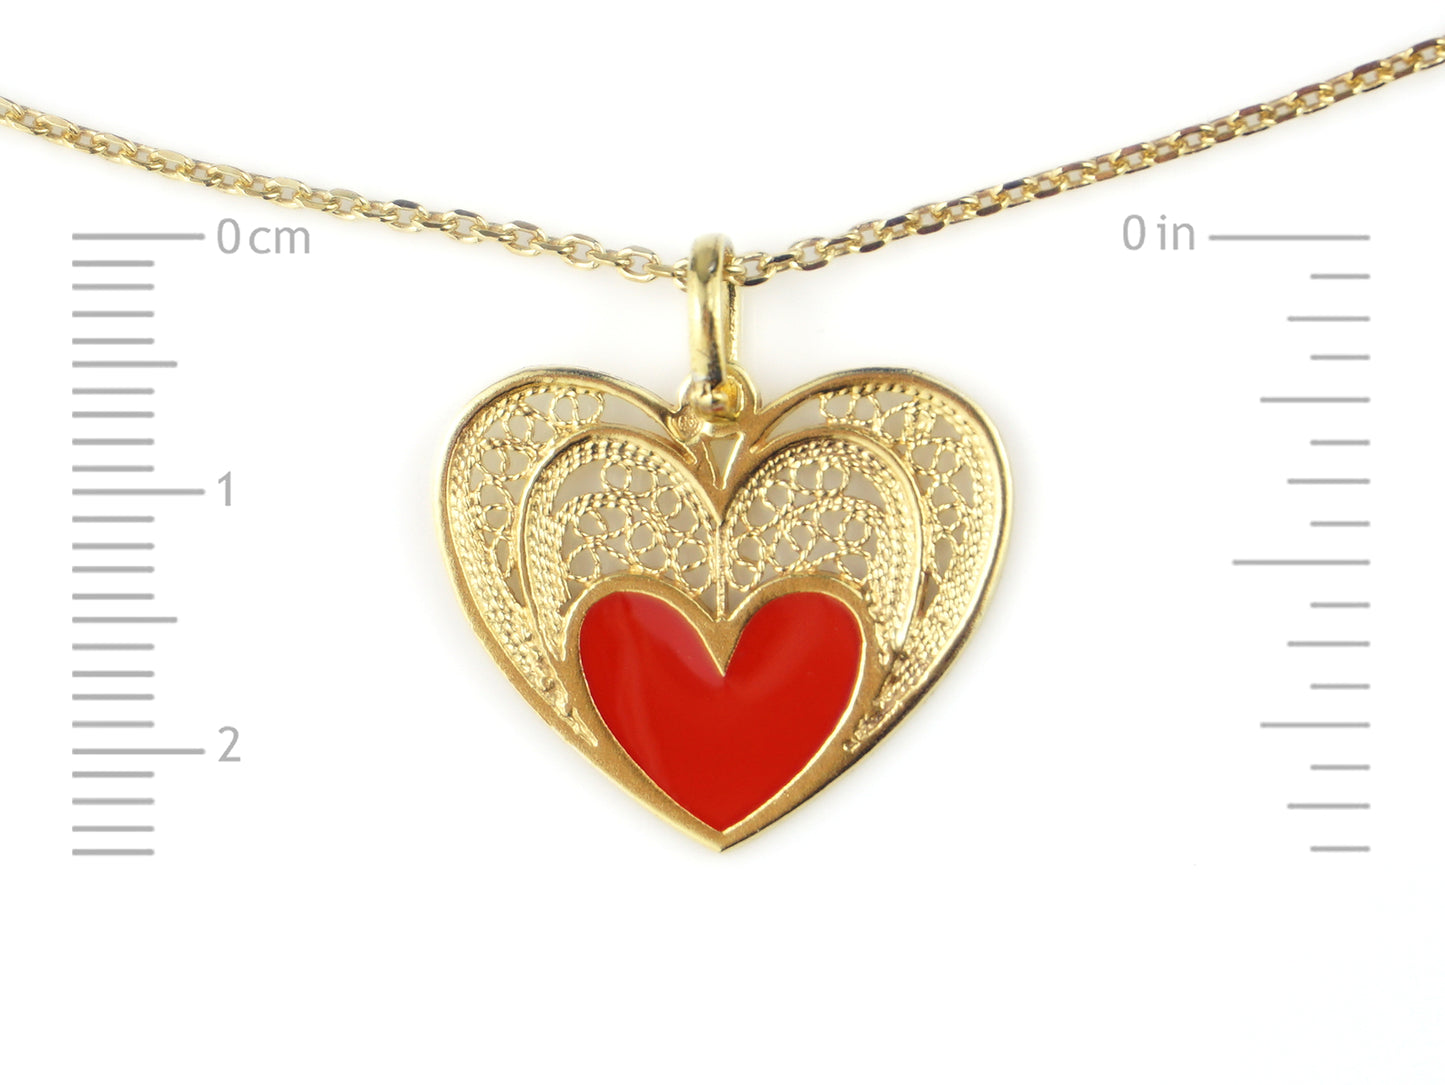 Colar Coração & Esmalte, Filigrana Portuguesa, Prata de Lei 925 Dourada - Medidas coração